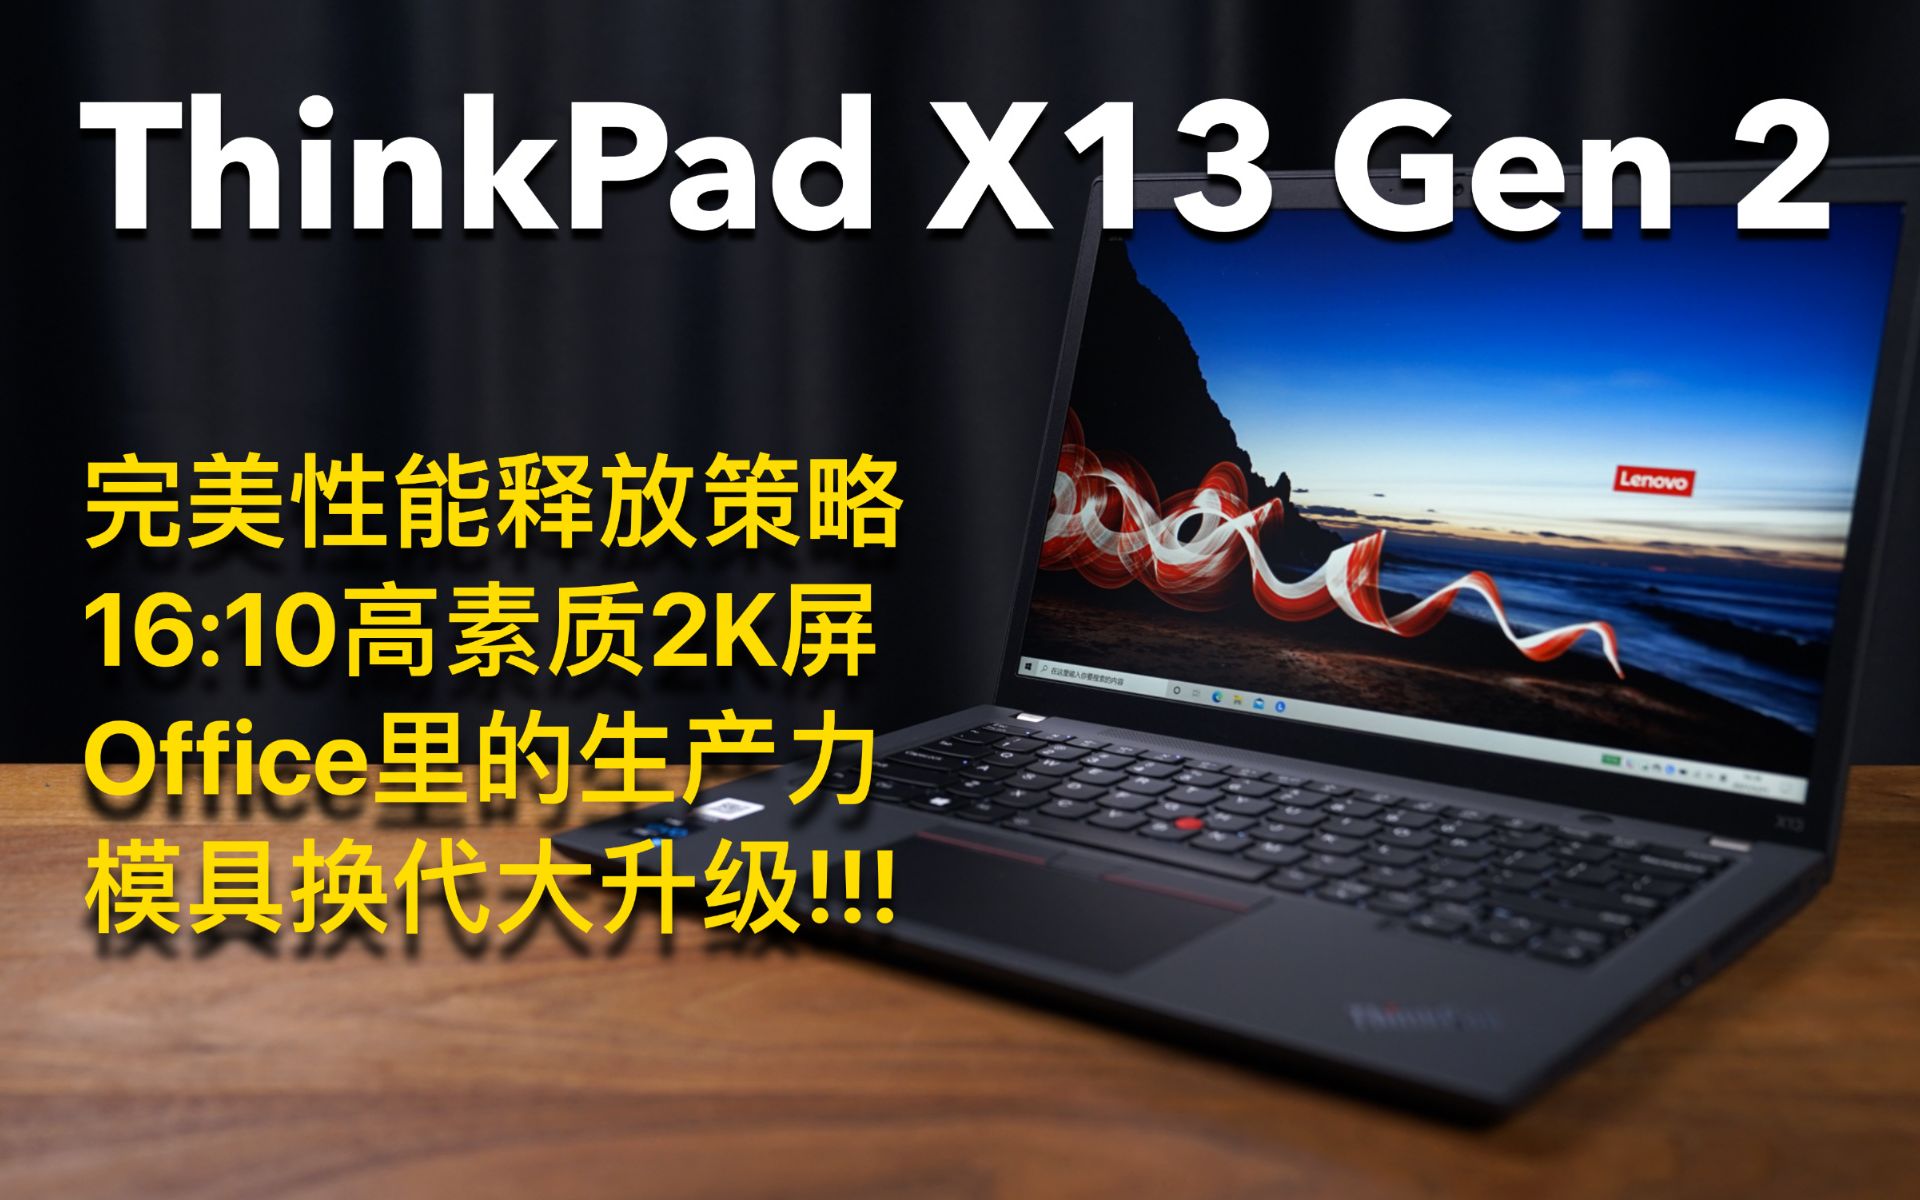 笔电评测|thinkpad x13 gen 2|完美office生产力工具换代大升级!